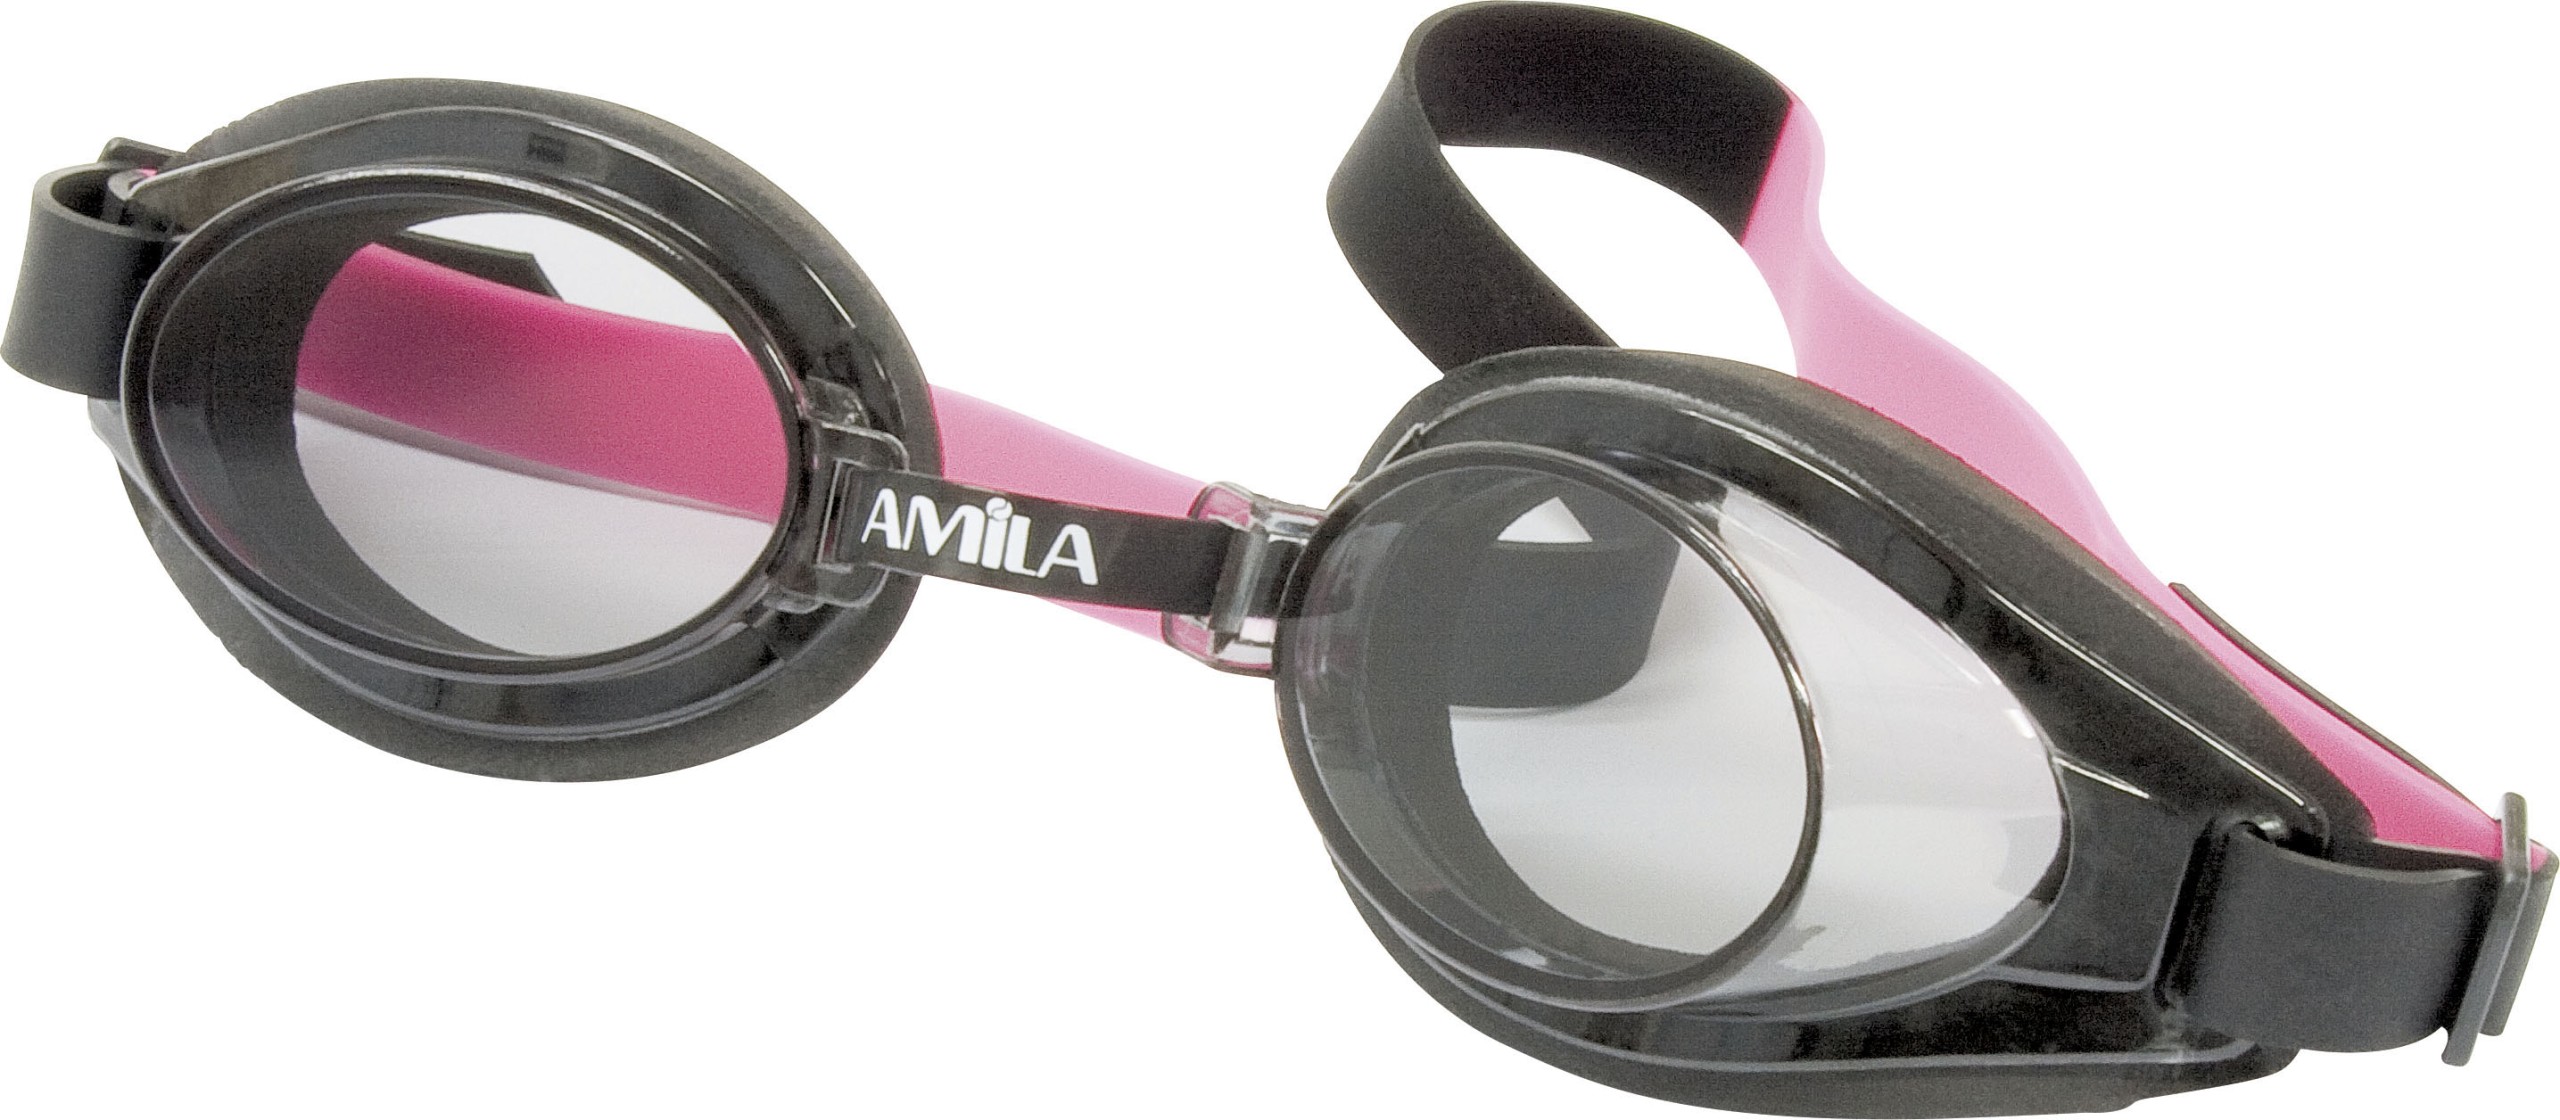 Γυαλιά Κολύμβησης AMILA 522AF Ροζ/Μαύρα